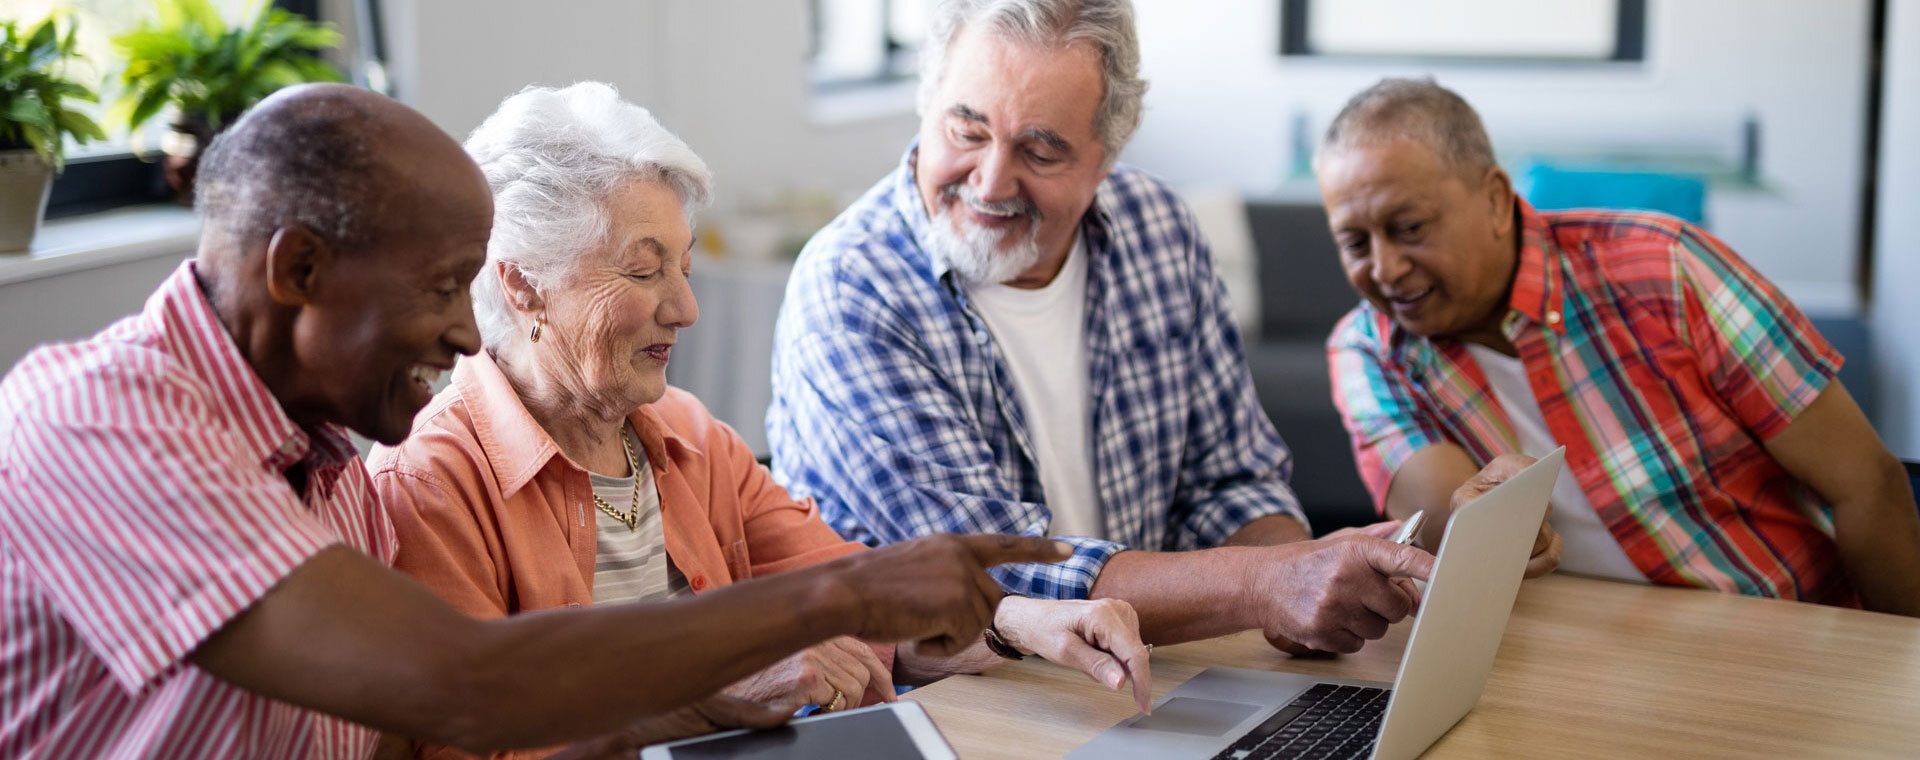 Découvrir les avantages de s’installer dans une résidence senior avec services